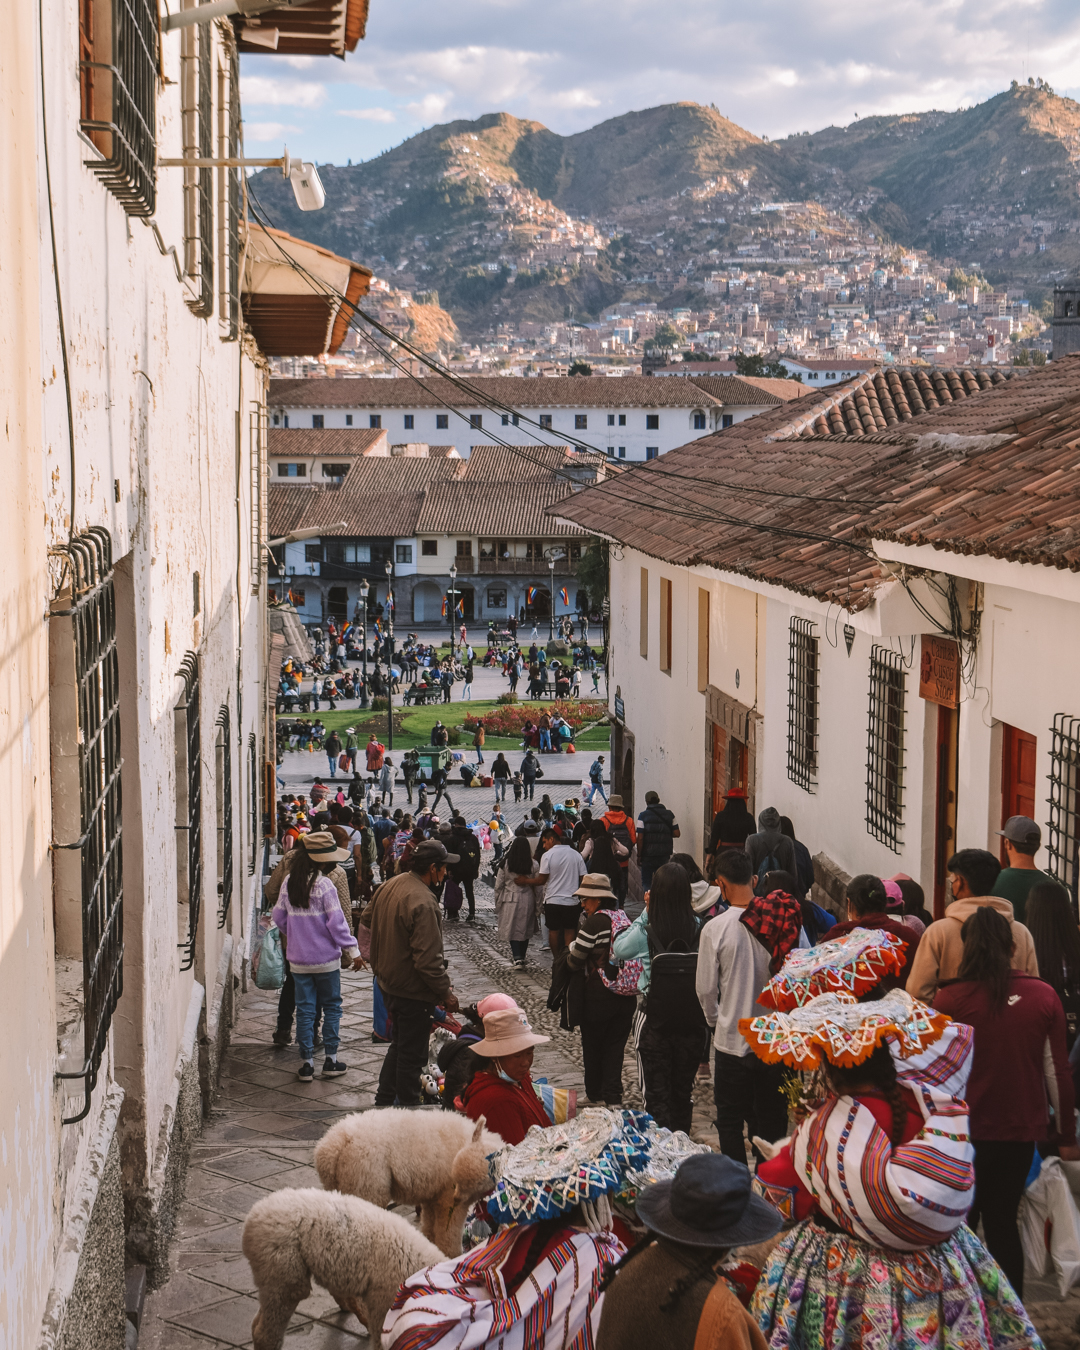 The Ultimate Guide to Cusco, Peru